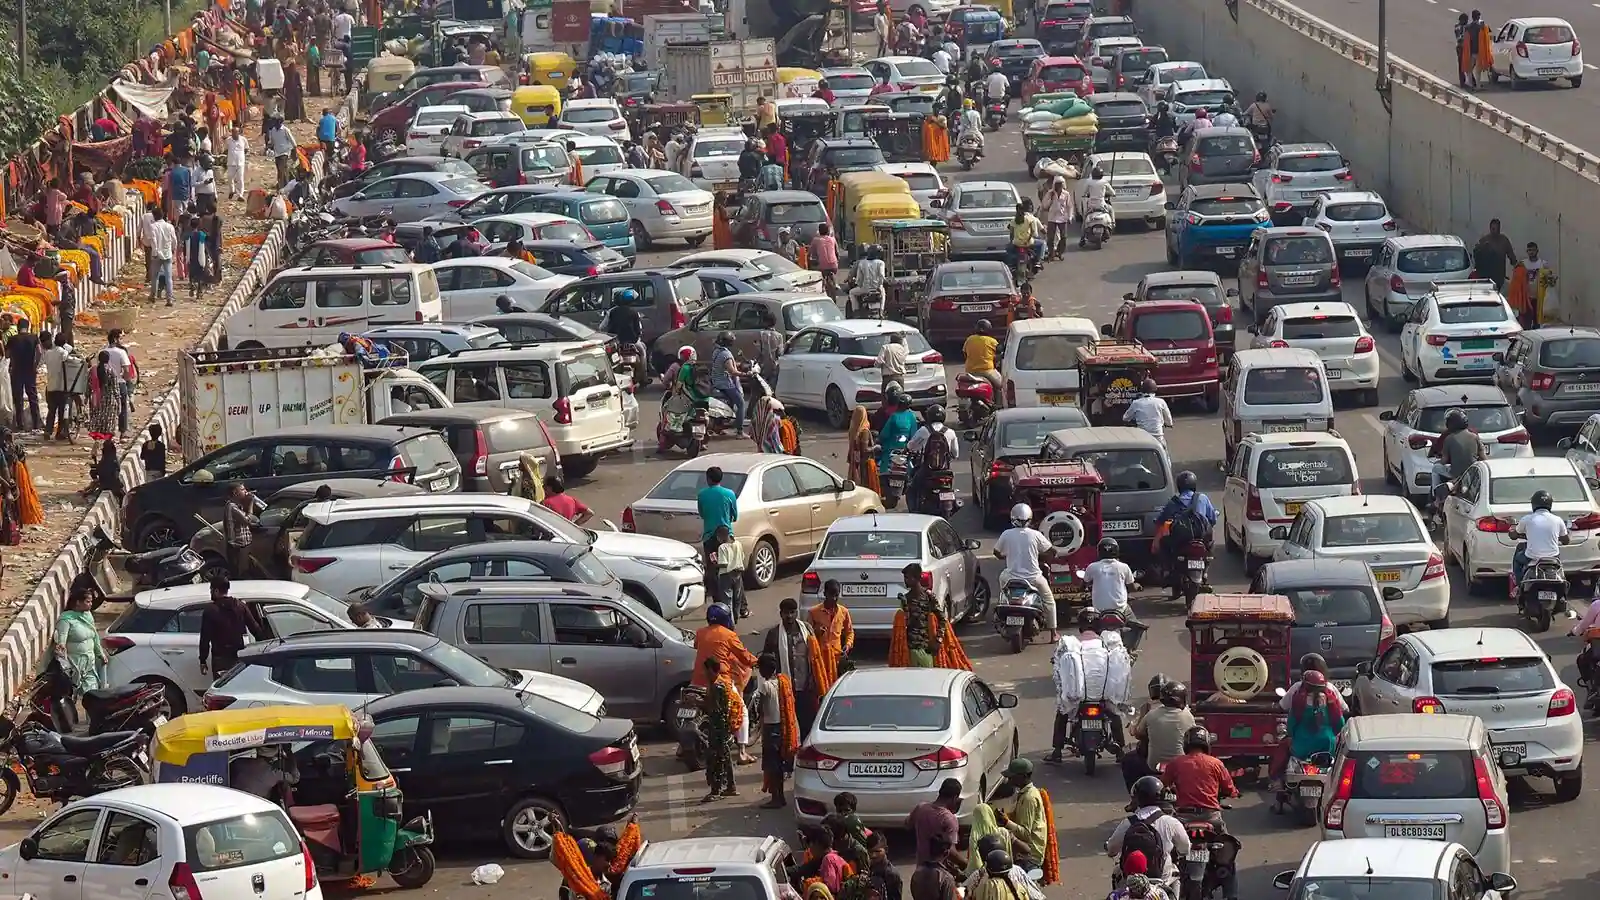 Delhi News: ट्रैफिक जाम से राहत नहीं, रोजाना ही करीब 64 जगहों पर लगता है कई घंटे तक जाम